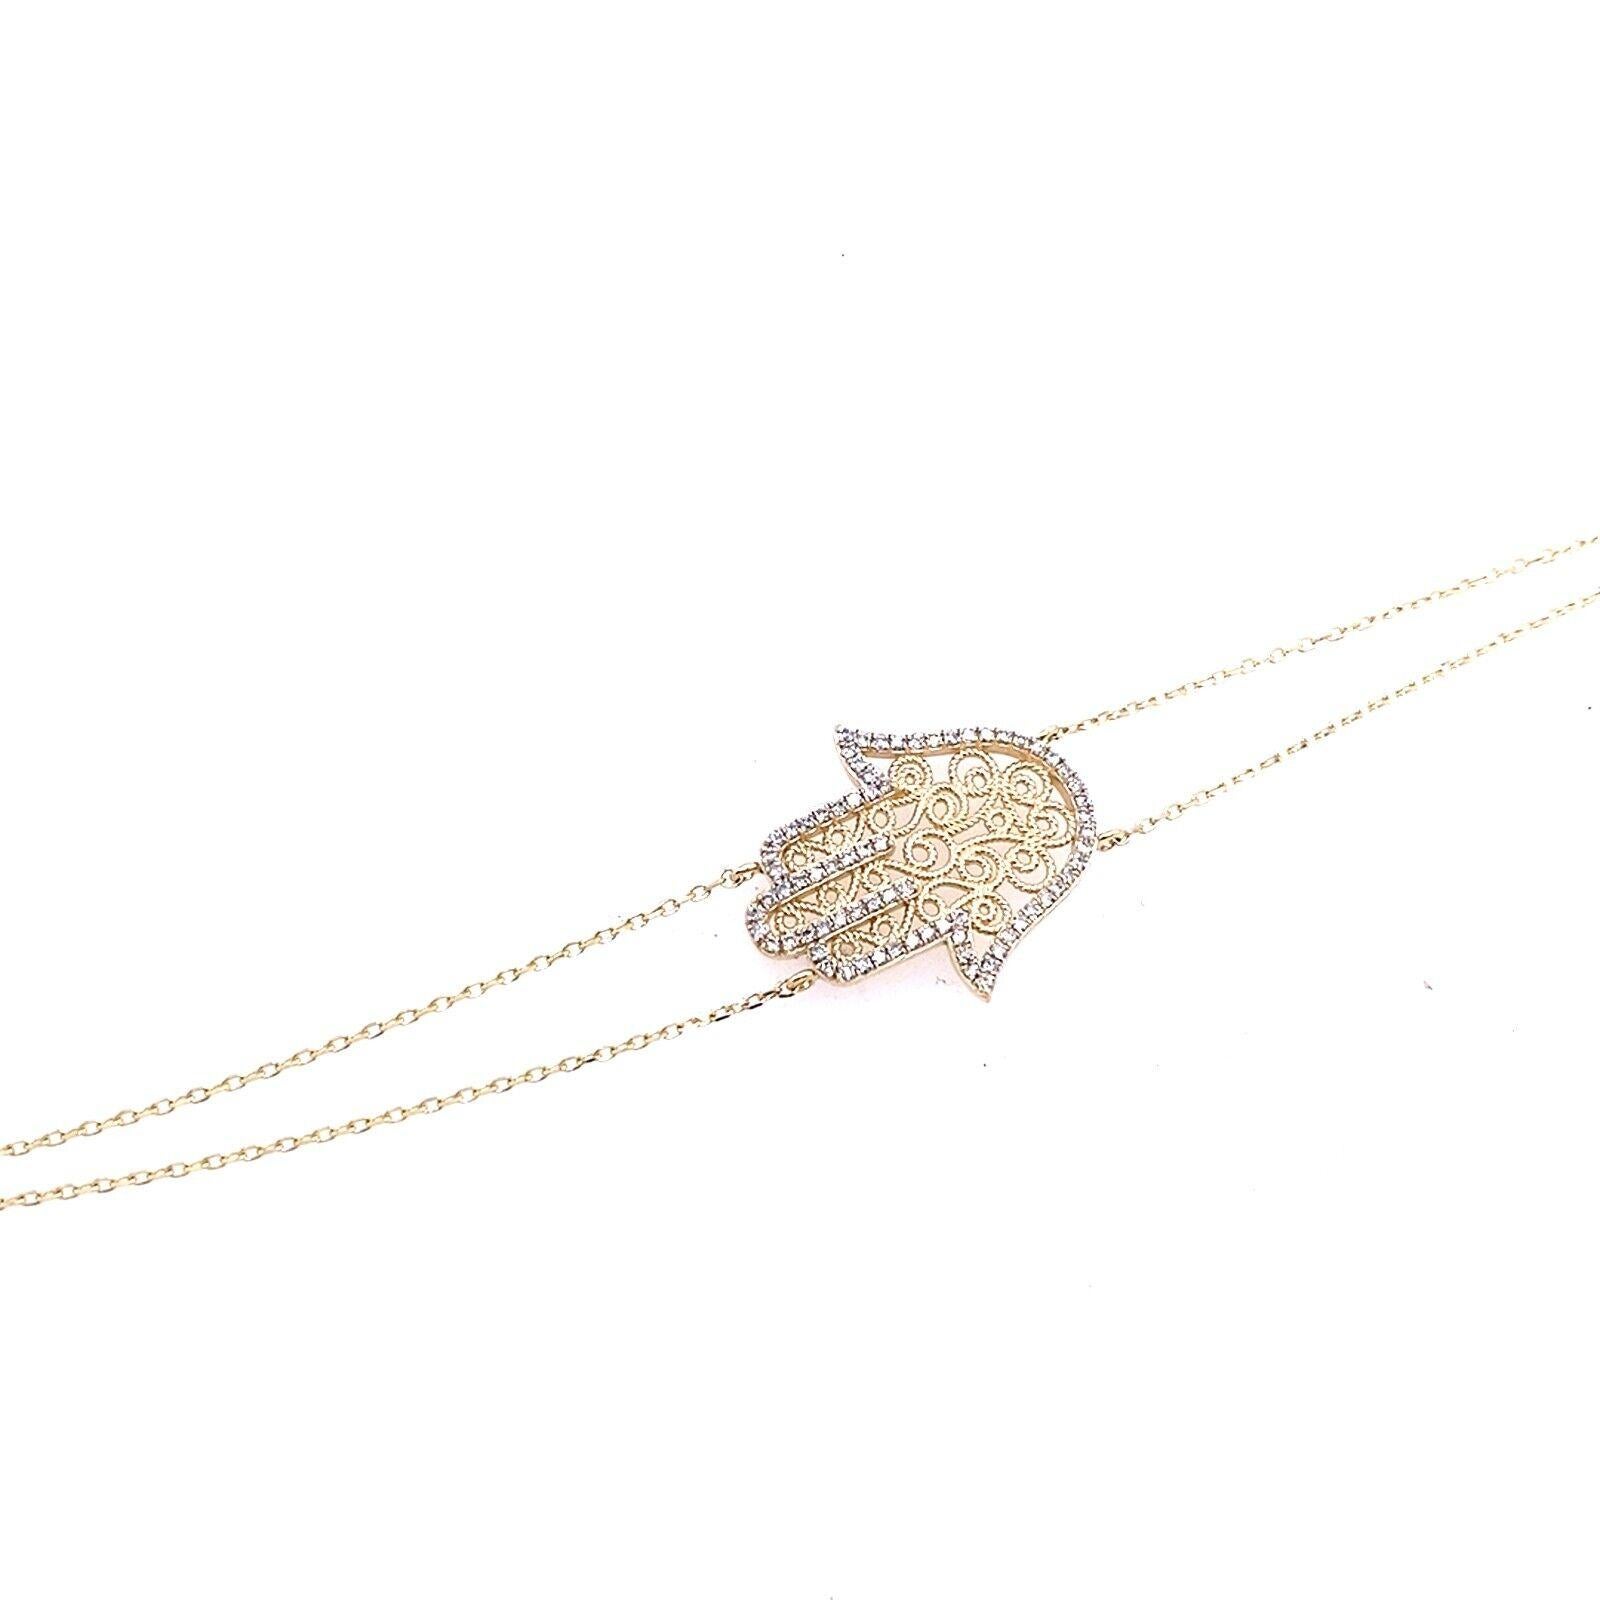 Dieses Hamza-Diamantarmband aus 14 Karat Gelbgold ist in der Länge verstellbar. Sie hat ein modisches und stilvolles Design und ist ideal für das tägliche Tragen.

Zusätzliche Informationen: 
Gesamtgewicht der Diamanten: 0,44ct
Farbe des Diamanten: